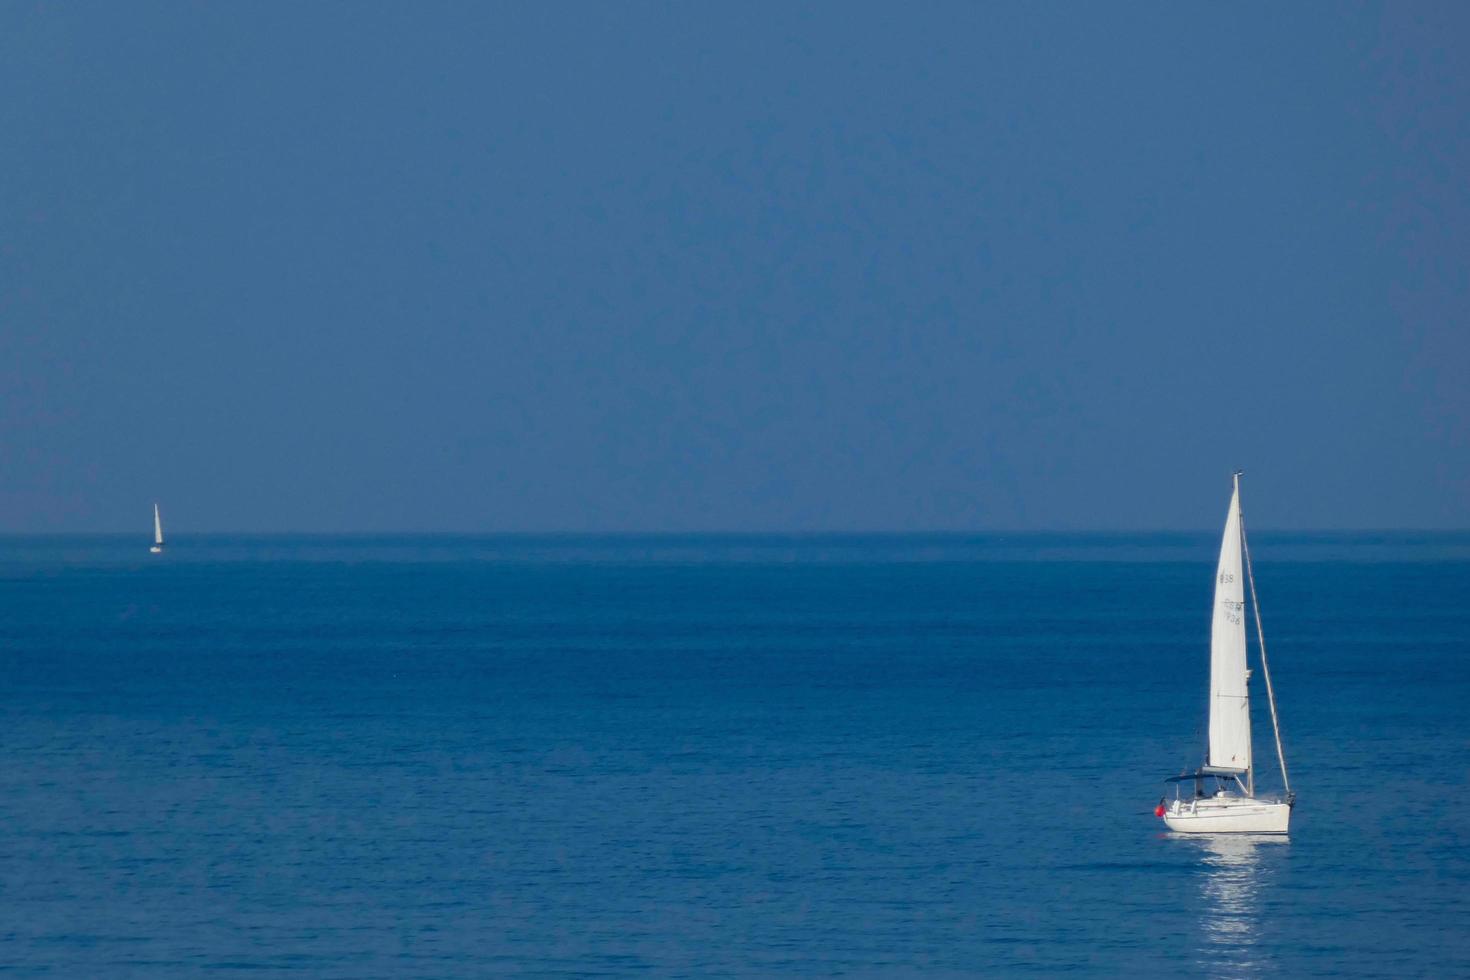 veleiro solitário na costa mediterrânea da costa brava catalã foto